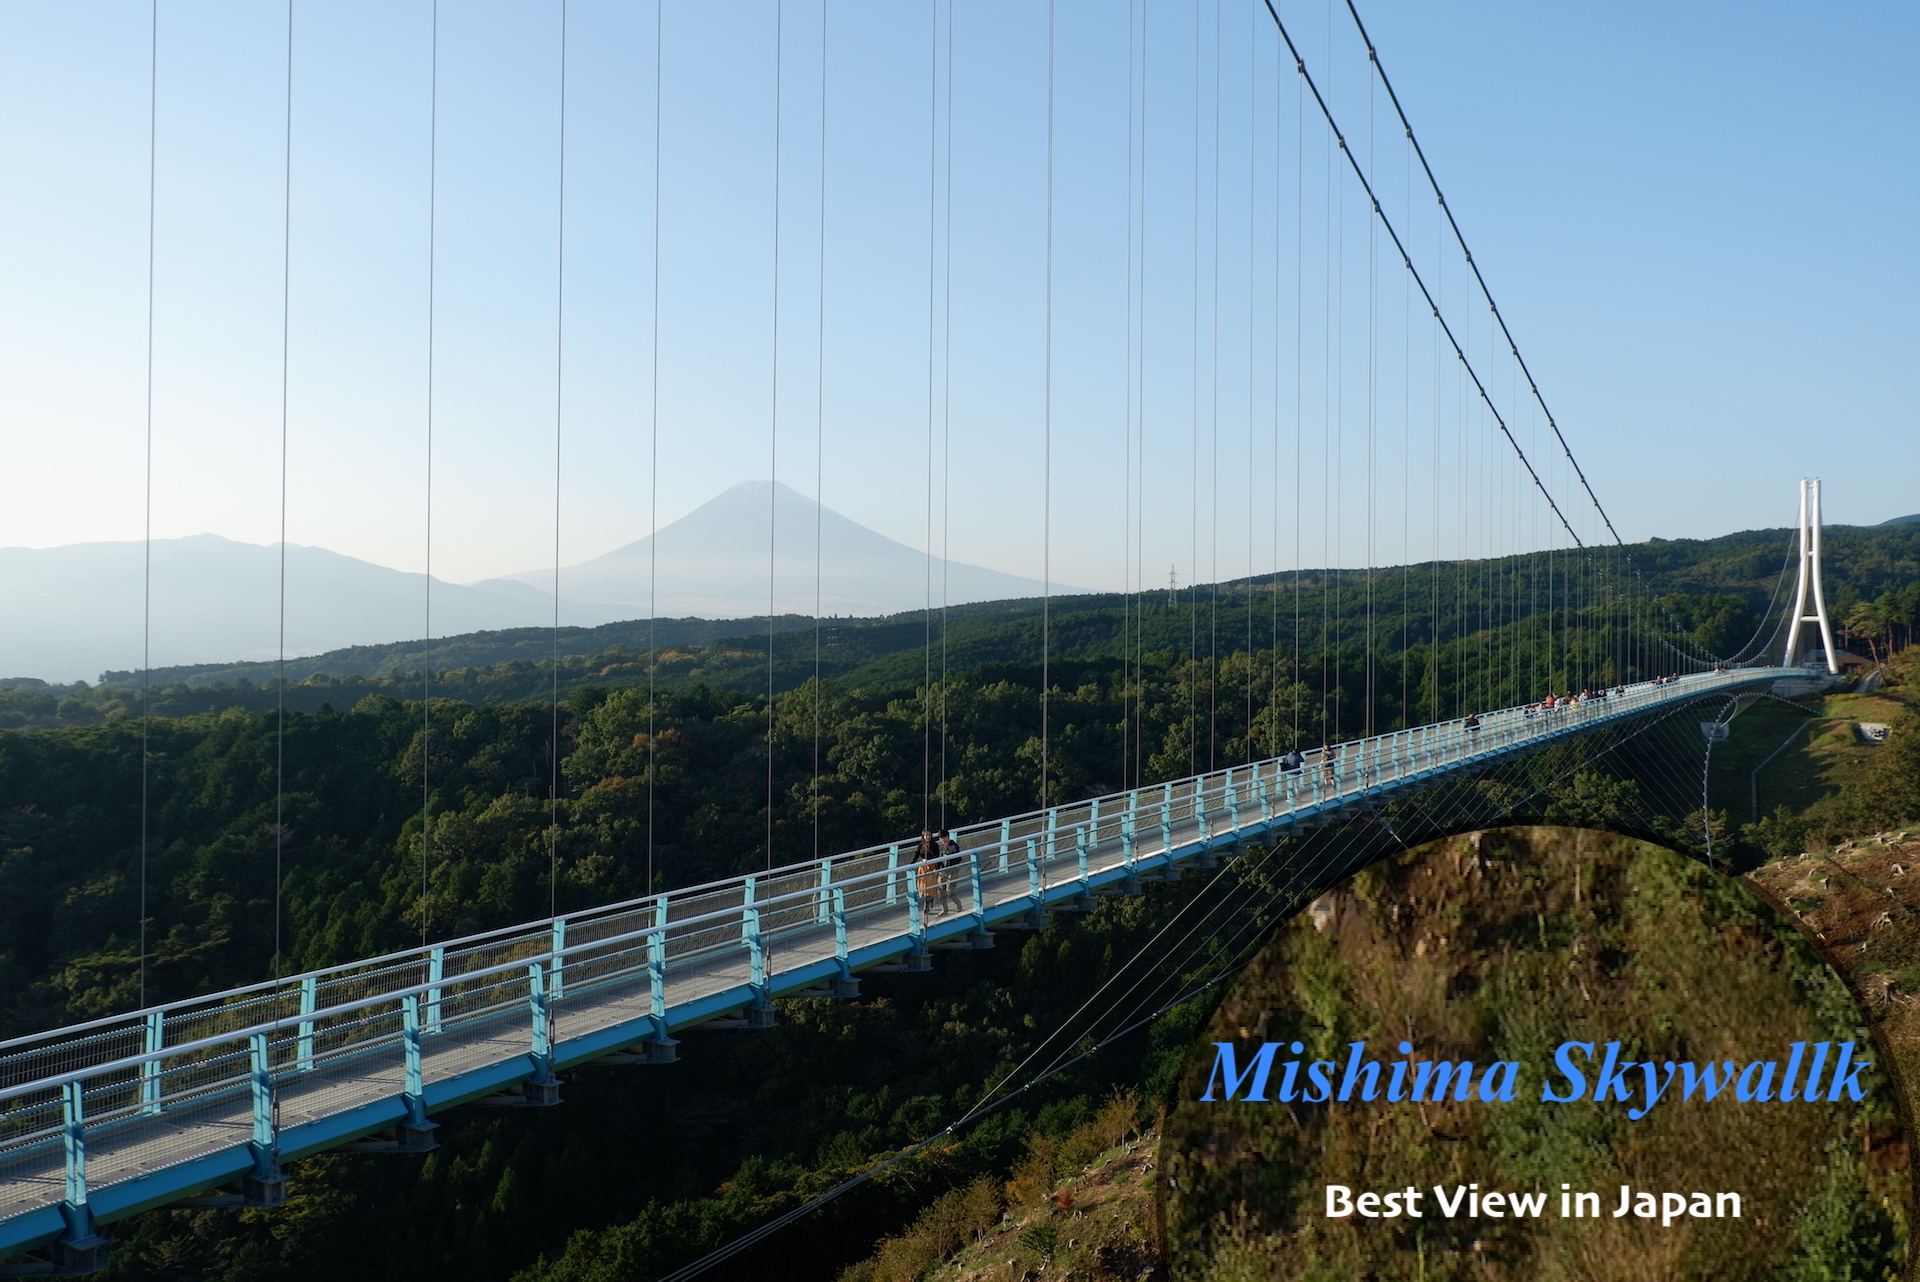 MISHIMA SKYWALK  สะพานแขวนคนเดินที่ยาวที่สุดในประเทศญี่ปุ่น แหล่งท่องเที่ยวที่สามารถมองเห็นวิว “ฟูจิชัง” ได้สุดประทับใจ